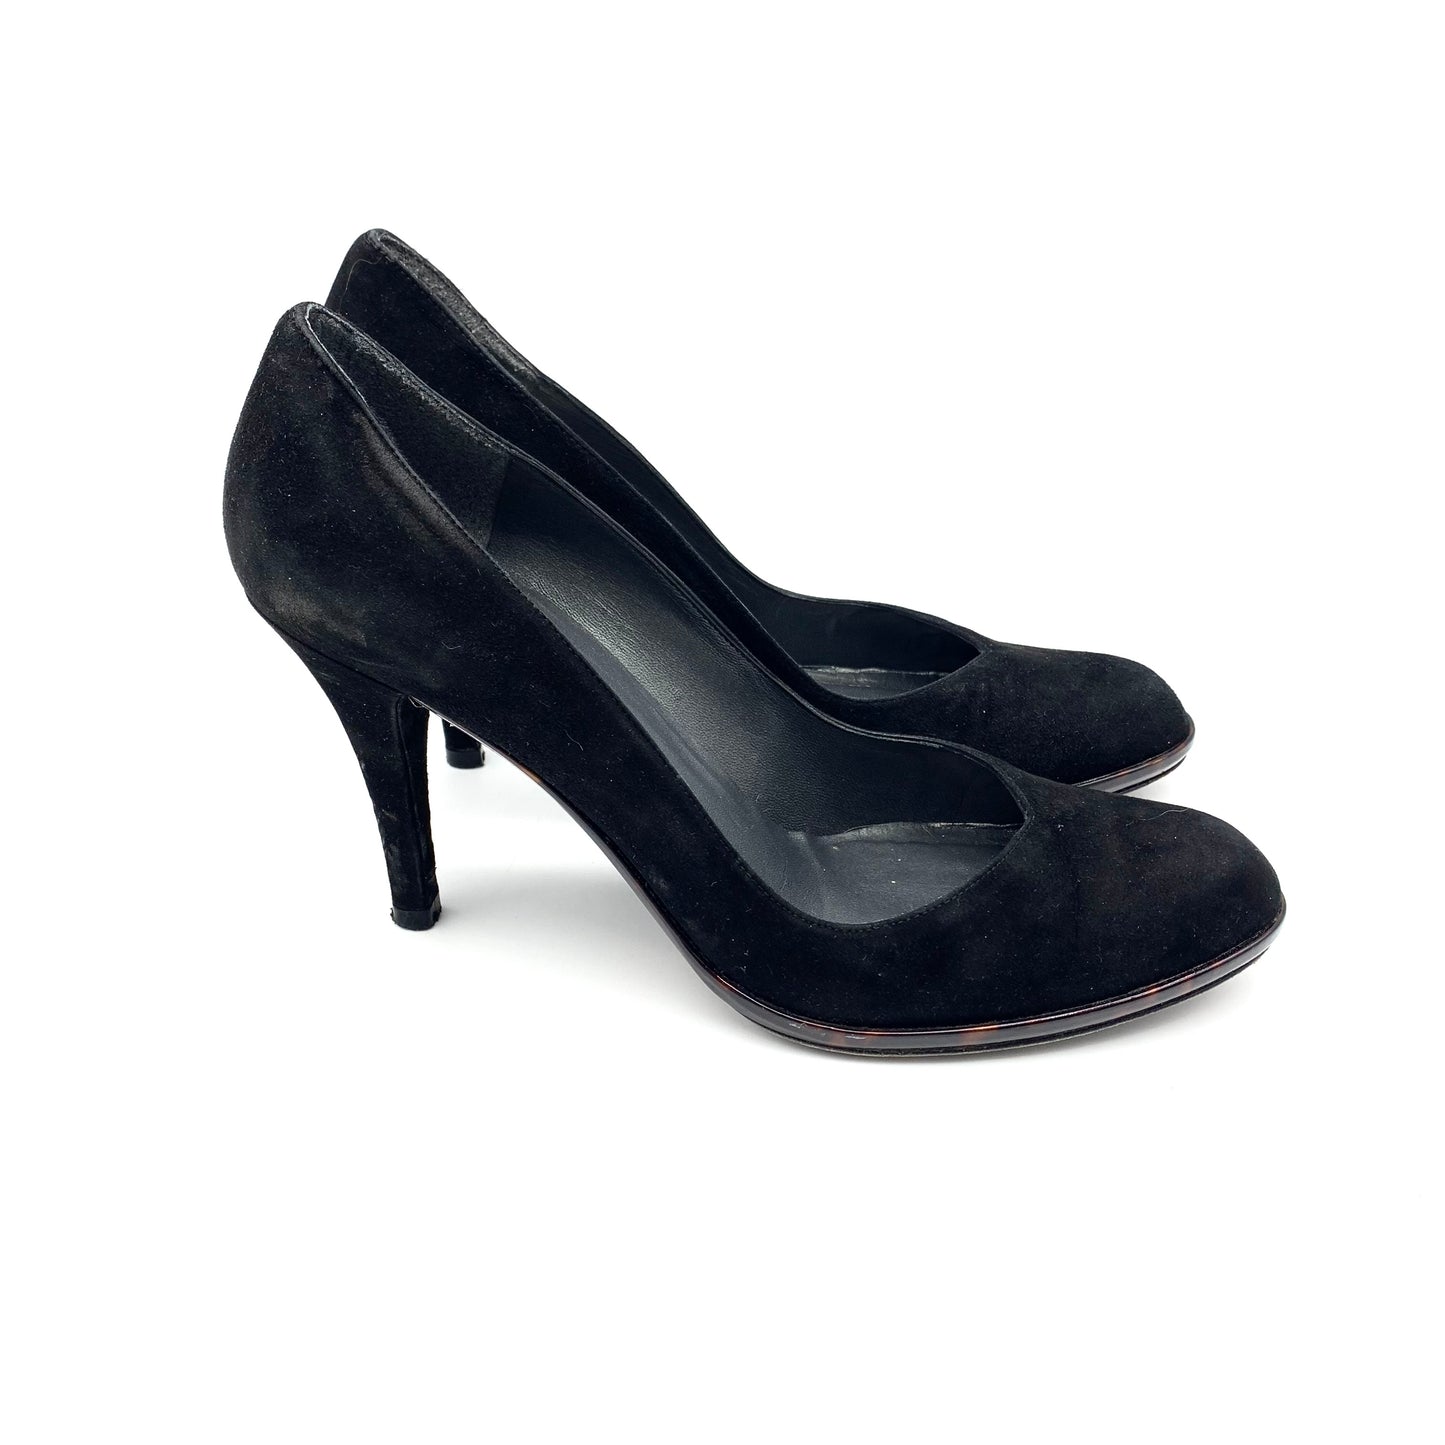 Sandals Heels Block By Stuart Weitzman  Size: 8.5